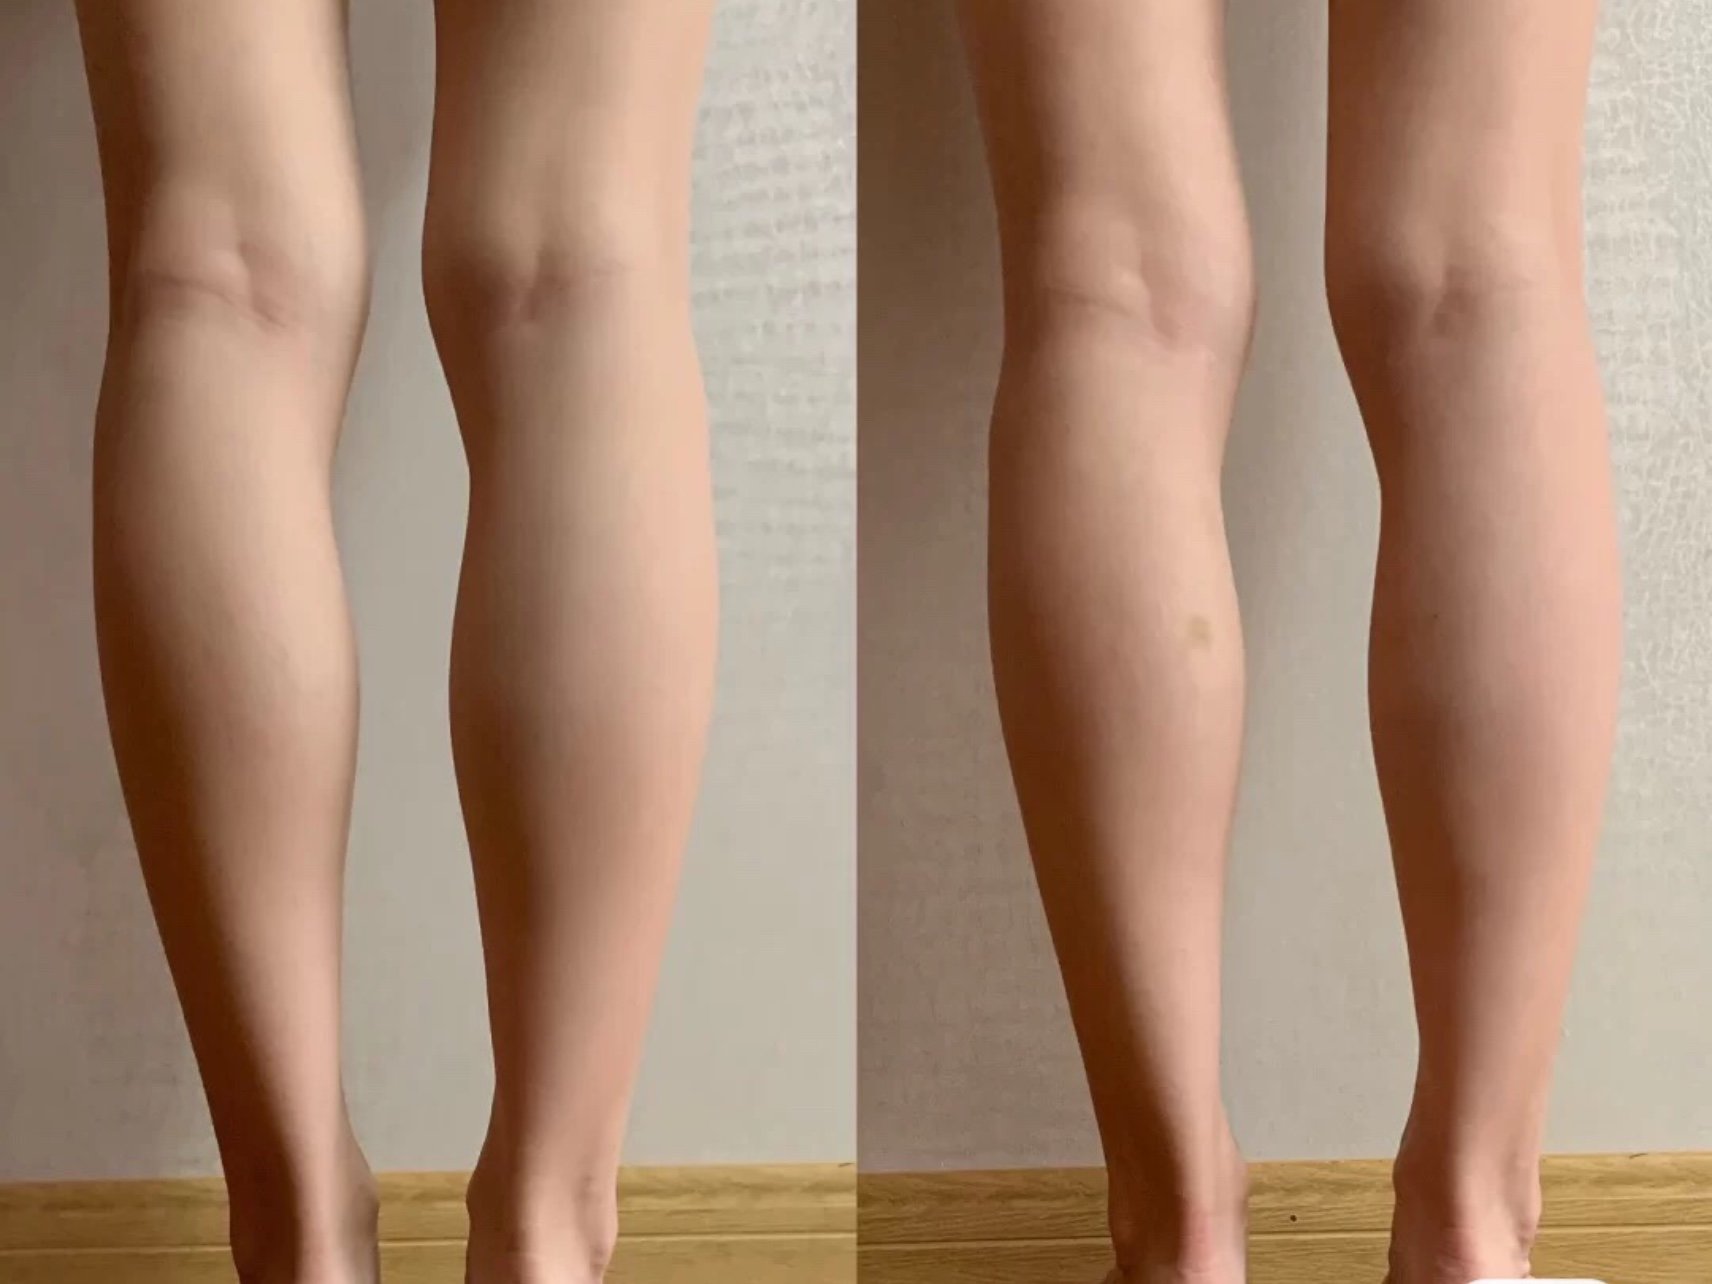 一般瘦腿针一次维持的效果是4～6个月, 因为日常